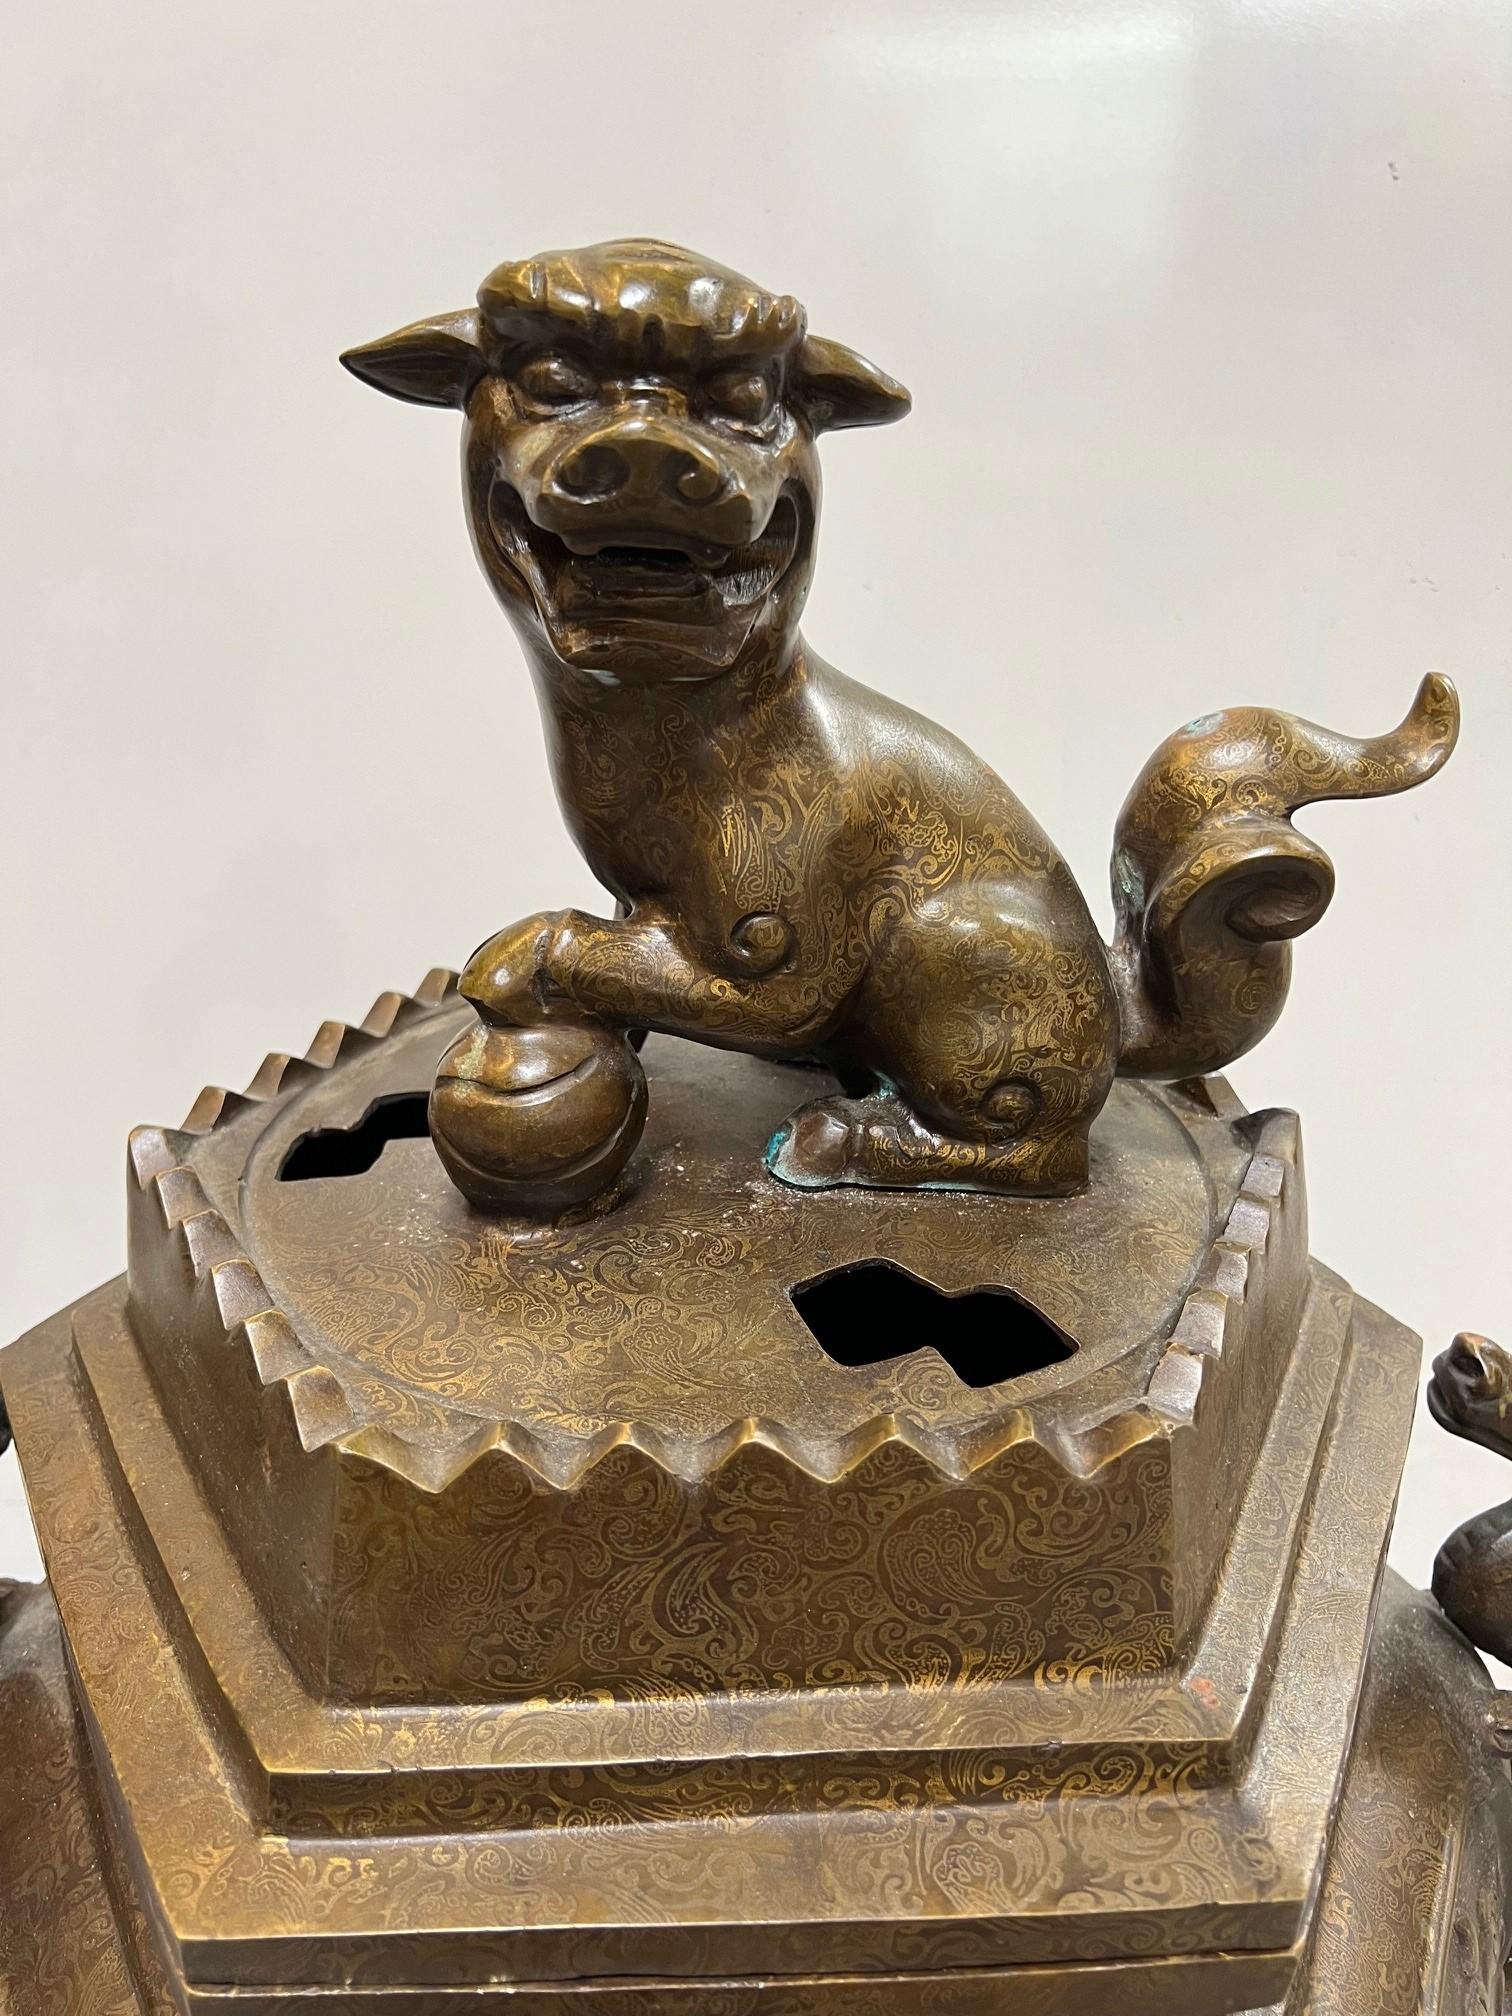 Grand encensoir en bronze du début du 20e siècle sur trois pieds, avec un chien foo assis sur le dessus et des dragons chinois de chaque côté. Les encensoirs, également connus sous le nom de brûleurs d'encens, ont une longue histoire en Chine, qui